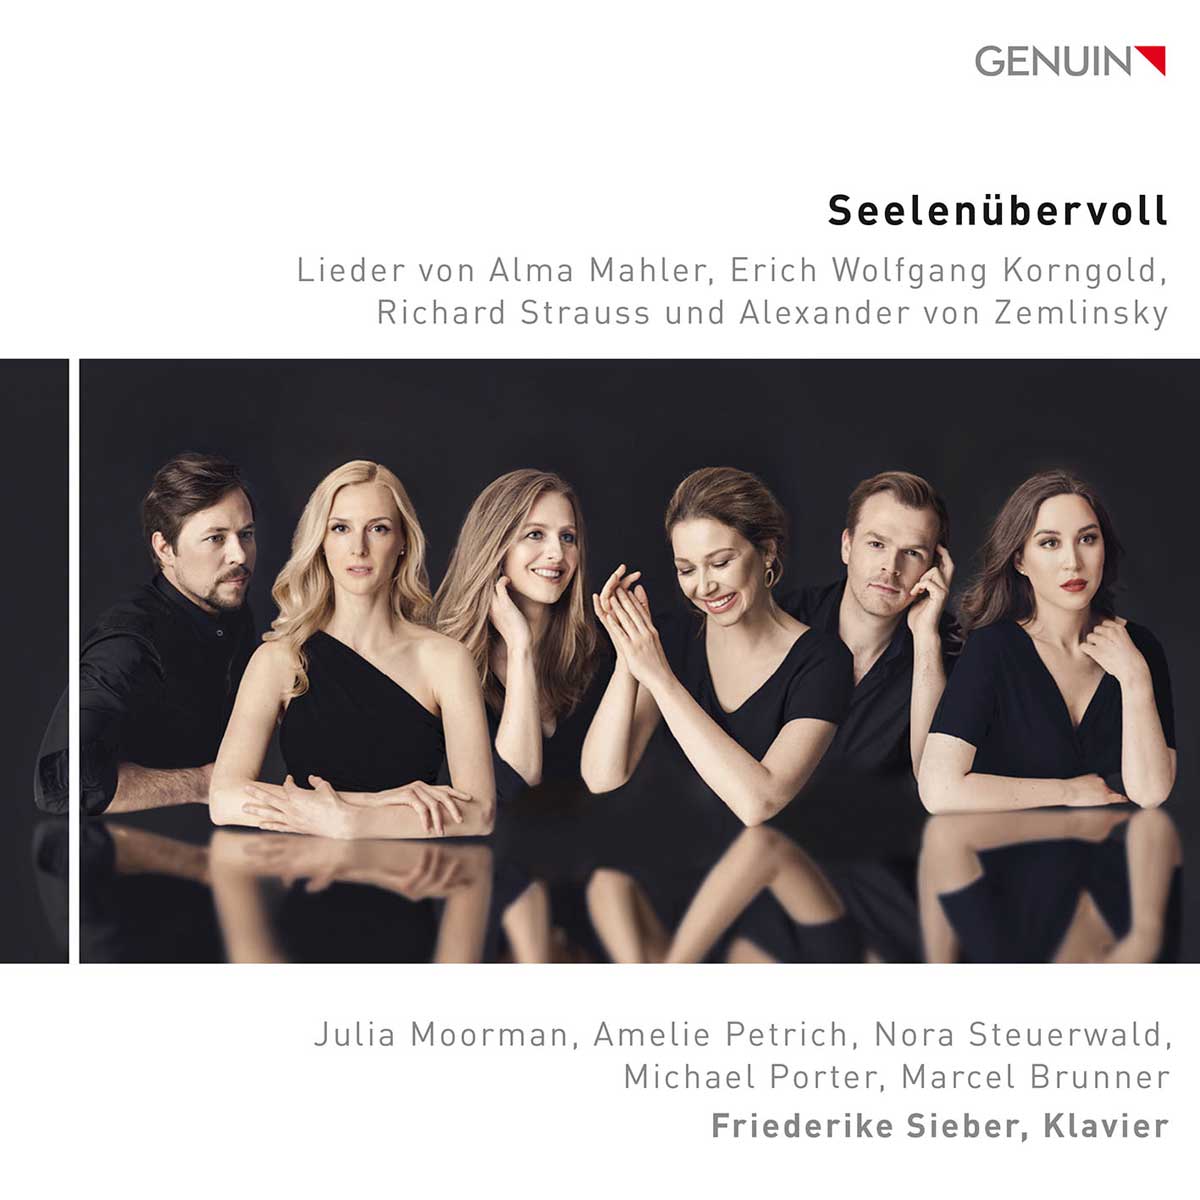 CD album cover 'Seelenübervoll – Overflowing With Soul' (GEN 23811) with Friederike Sieber, Julia Moorman ...